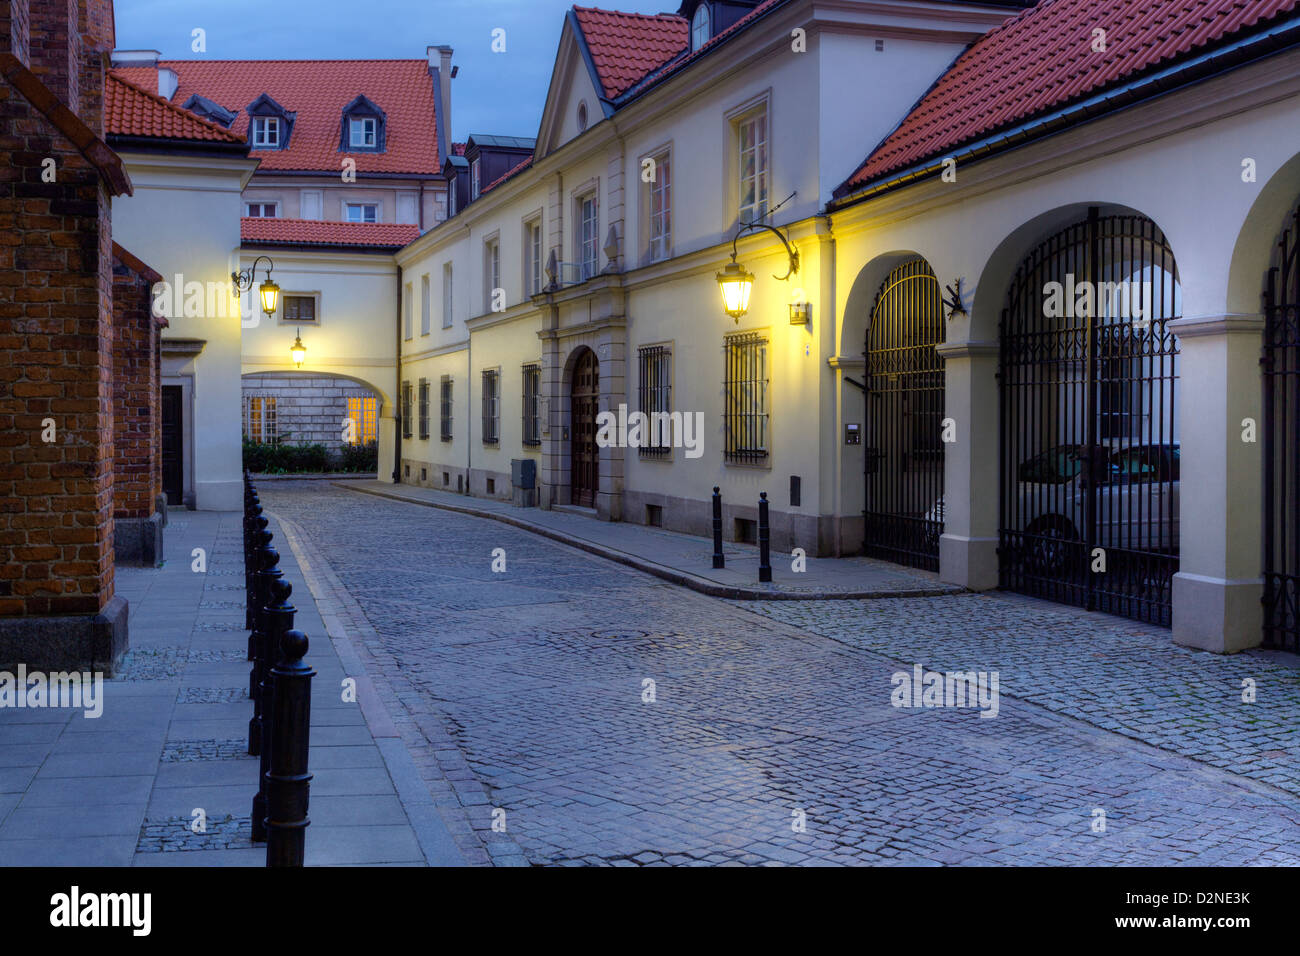 Old Town, Kanoniastreet, Warsaw,Poland, UNESCO World Heritage site Stock Photo